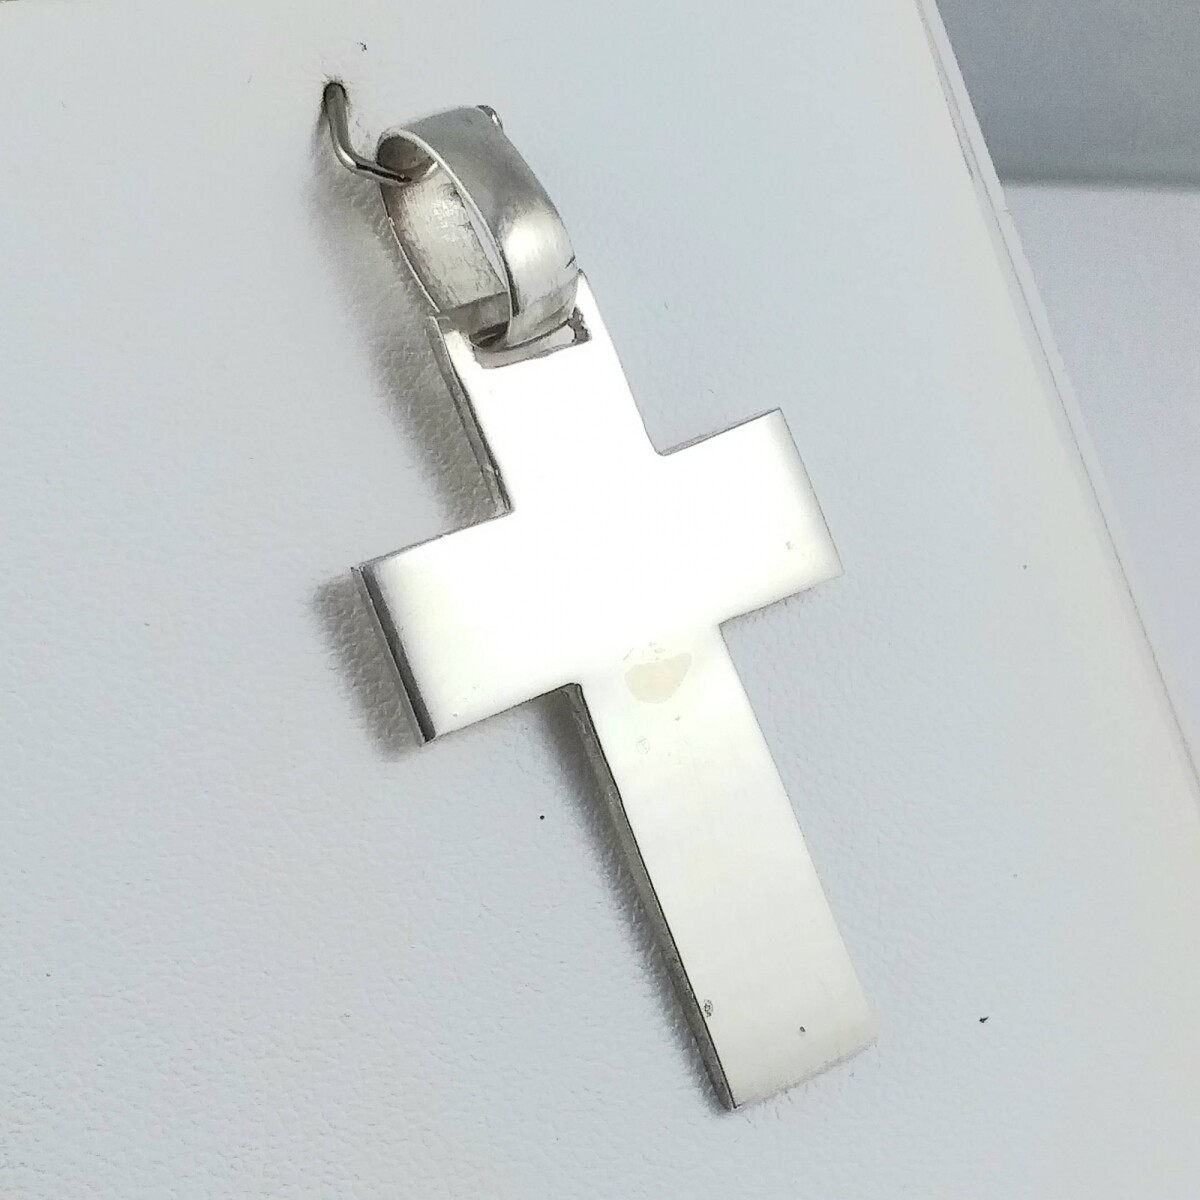 Cruz de plata 925 Medidas largo 4 cm, ancho 2cm, espesor 1 mm. 